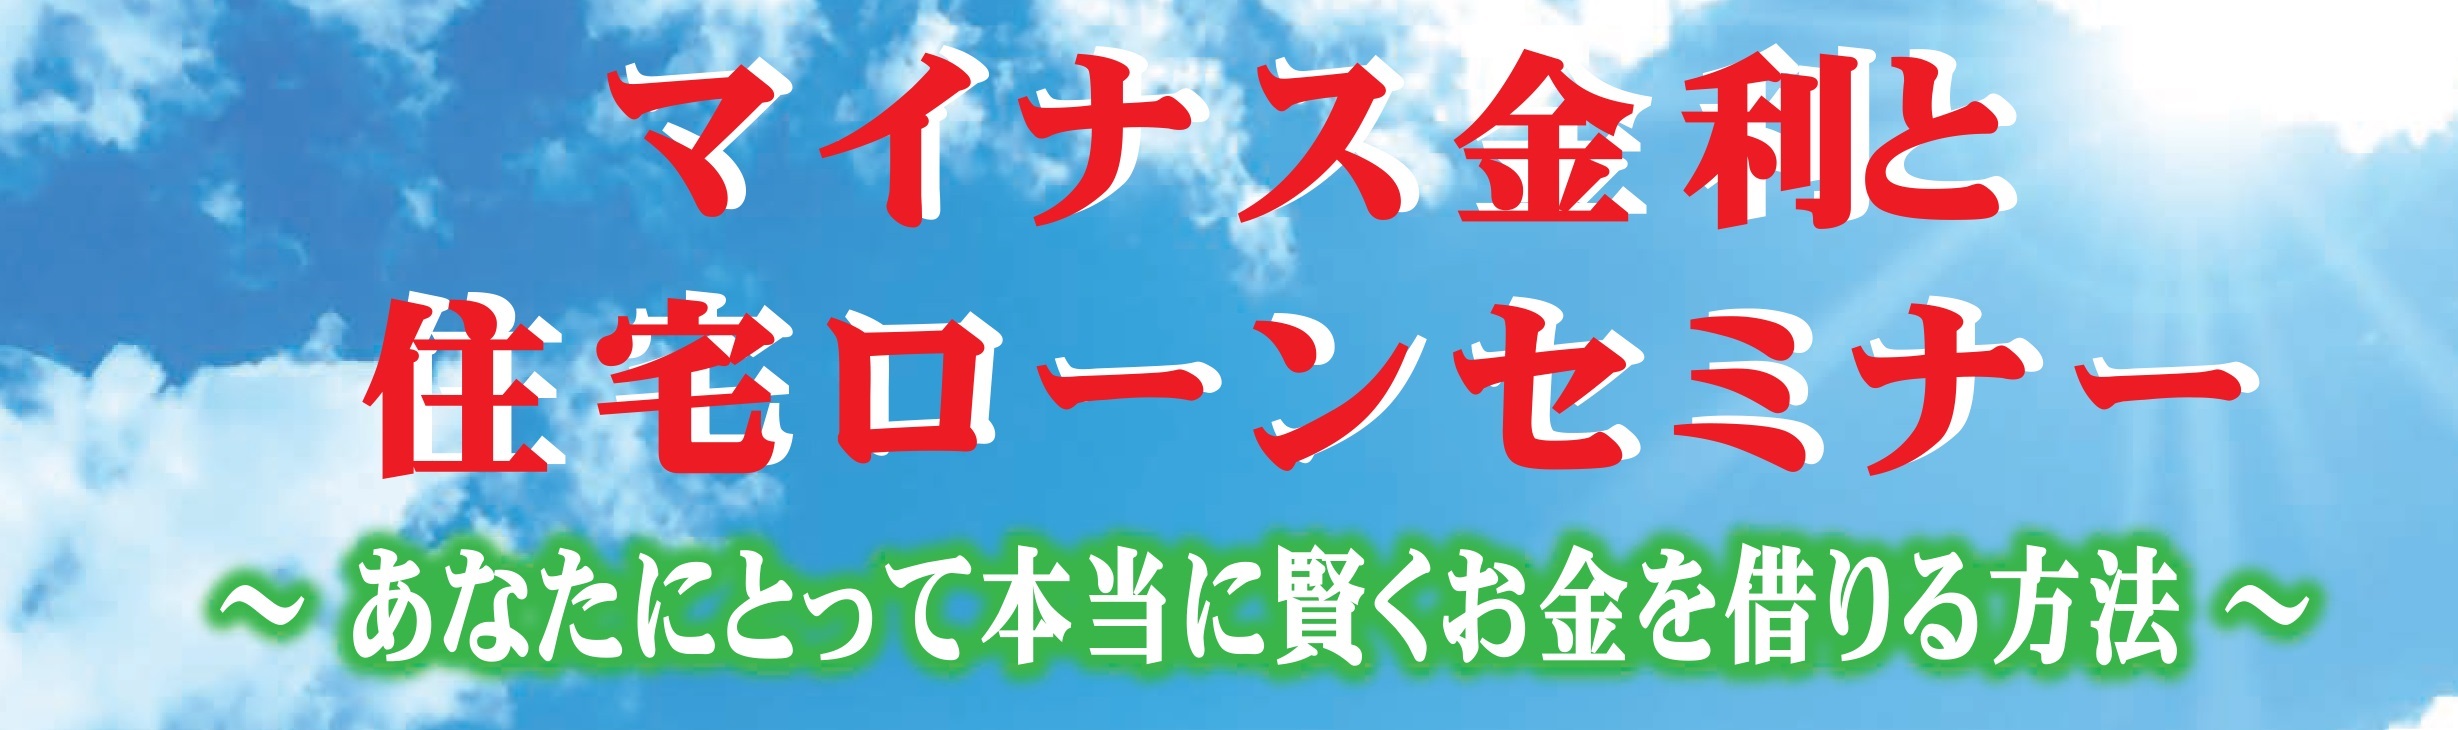 4月30日(土)マイナス金利と住宅ローンセミナー 第二弾 【無料】